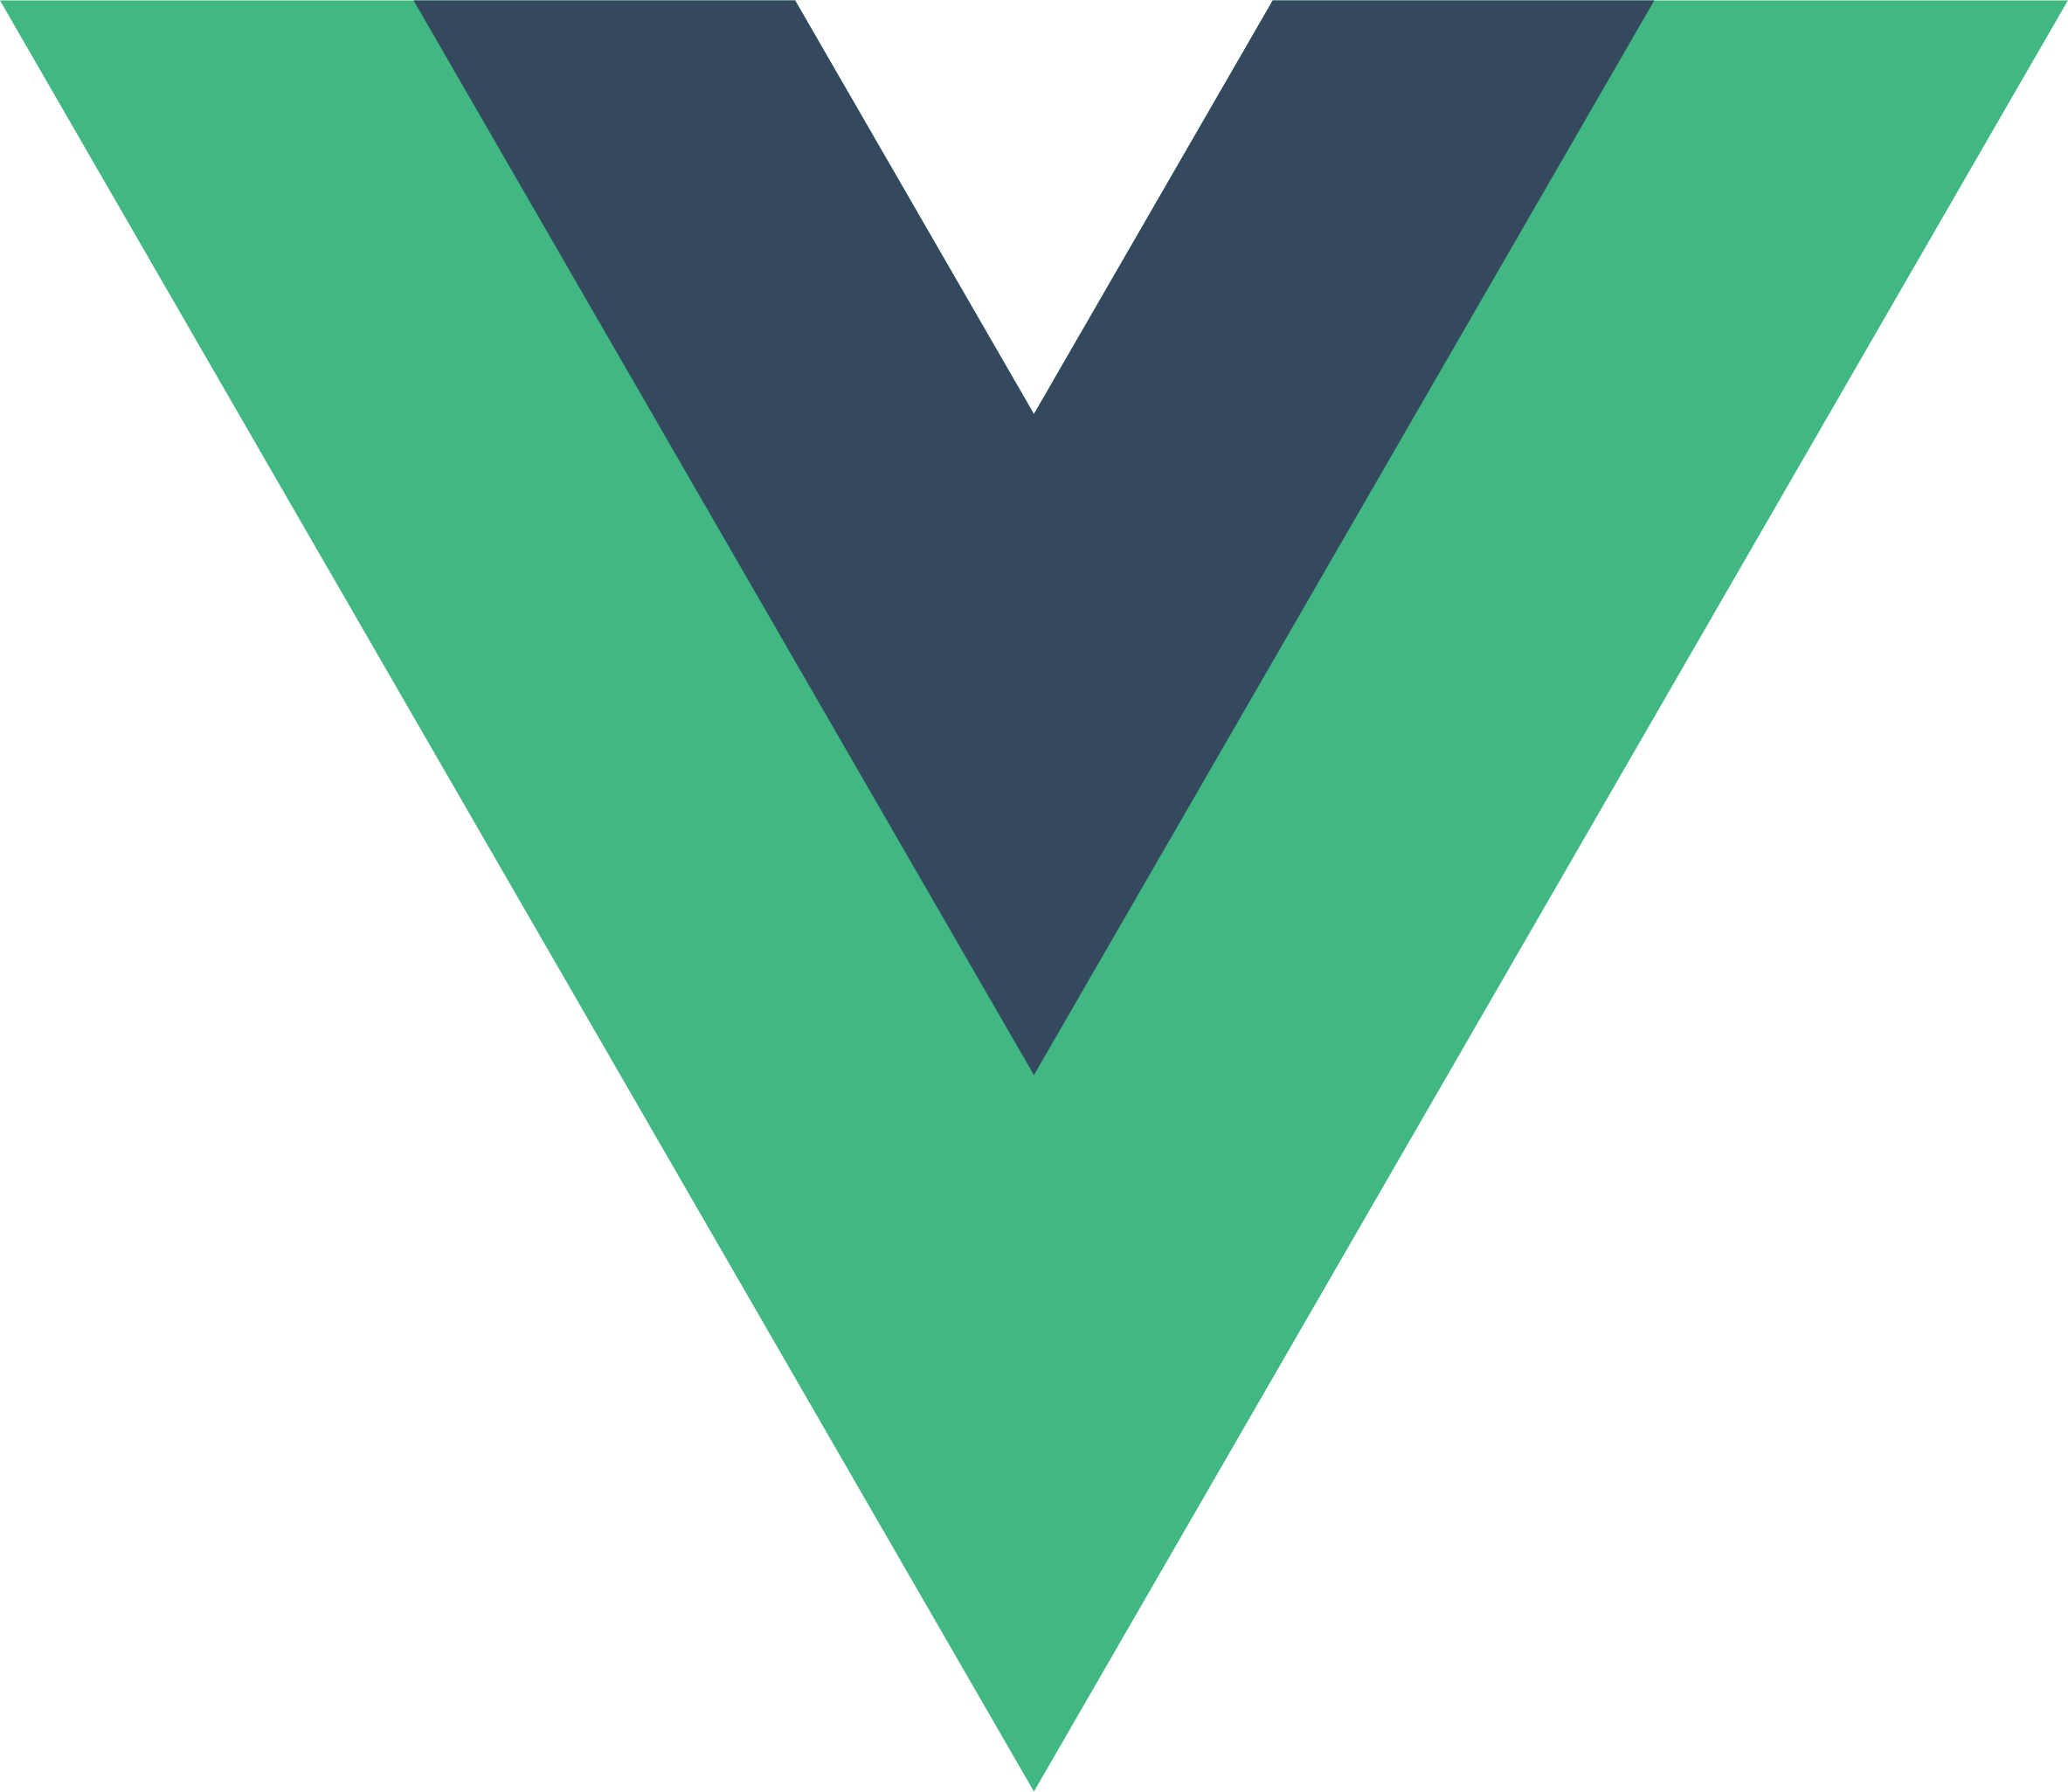 Vue.js Development Services